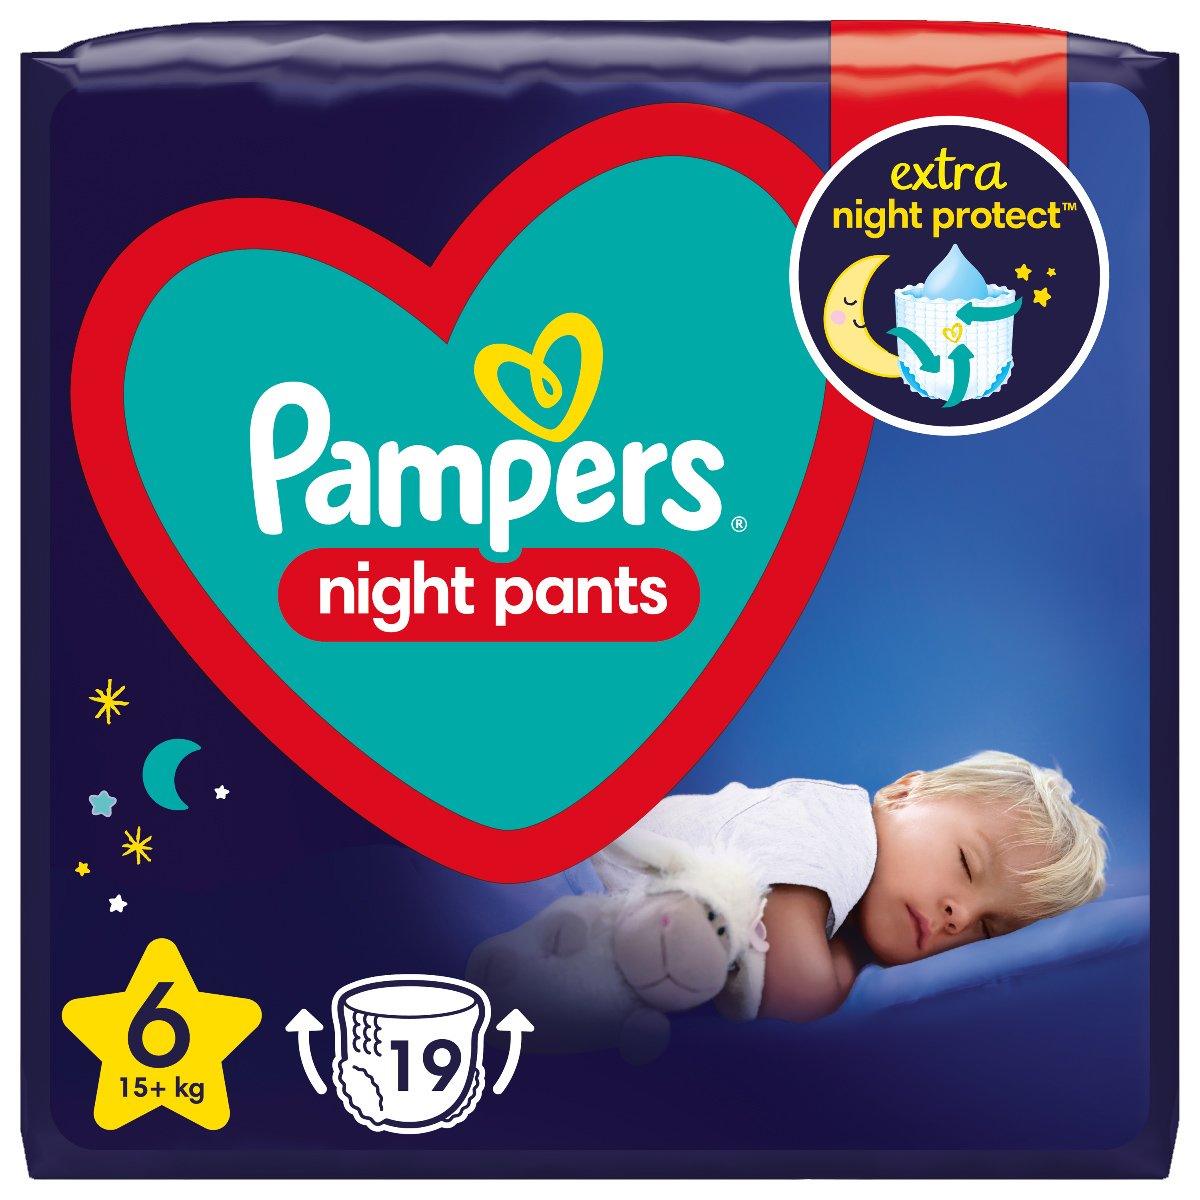 Pampers Night Pants Νο6 (15+ kg) 19 πάνες Βρακάκι 41710